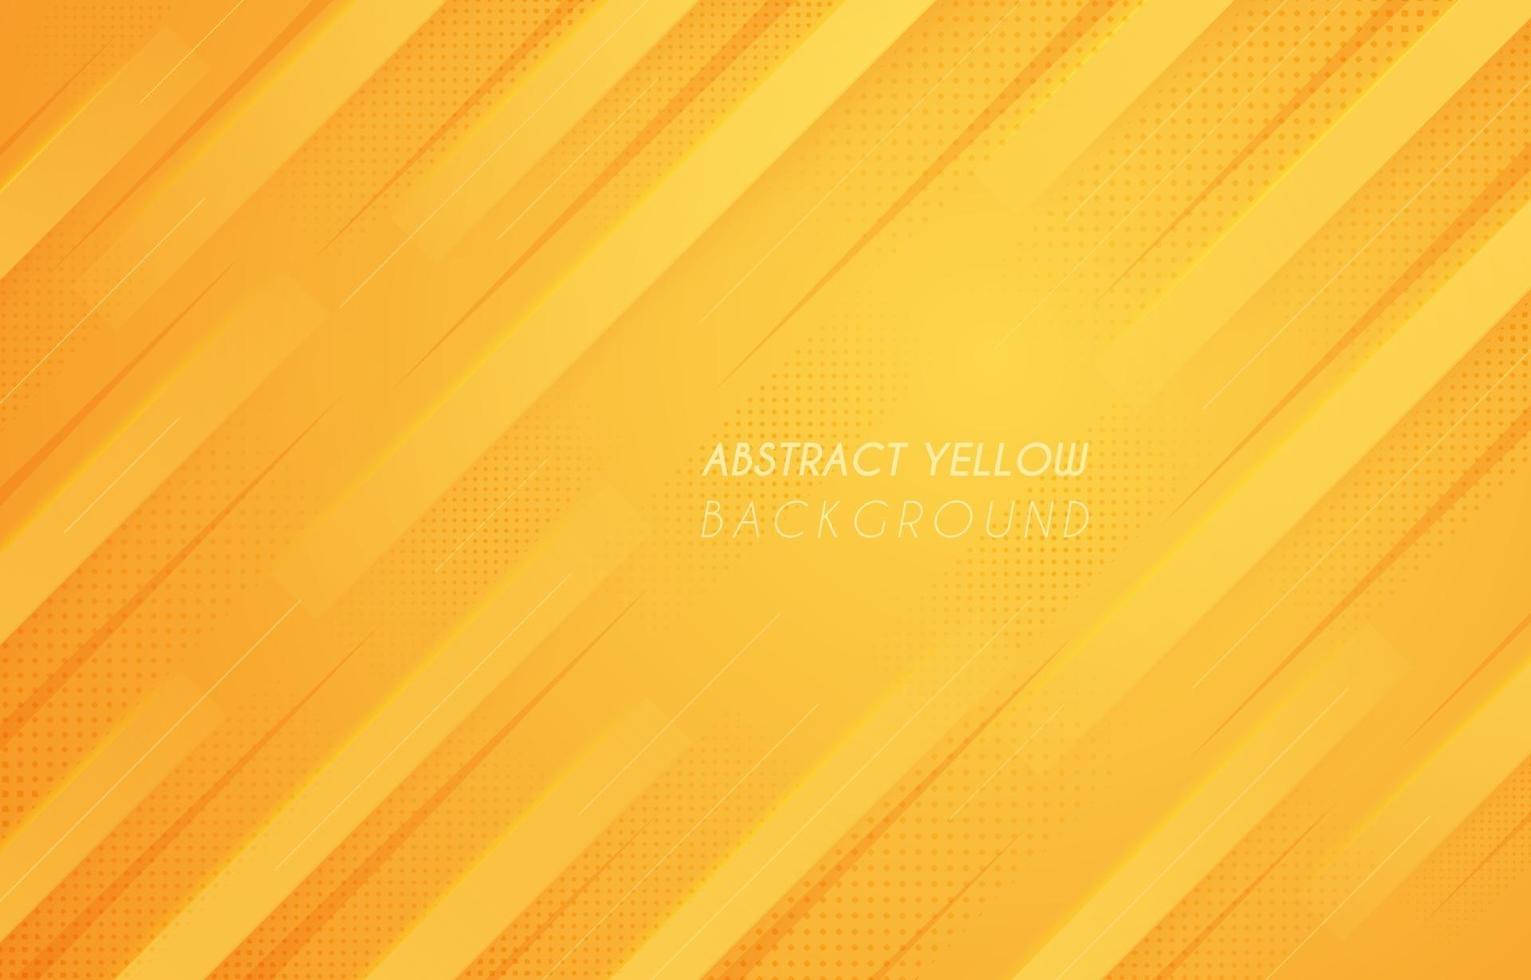 semplice sfondo giallo moderno vettore